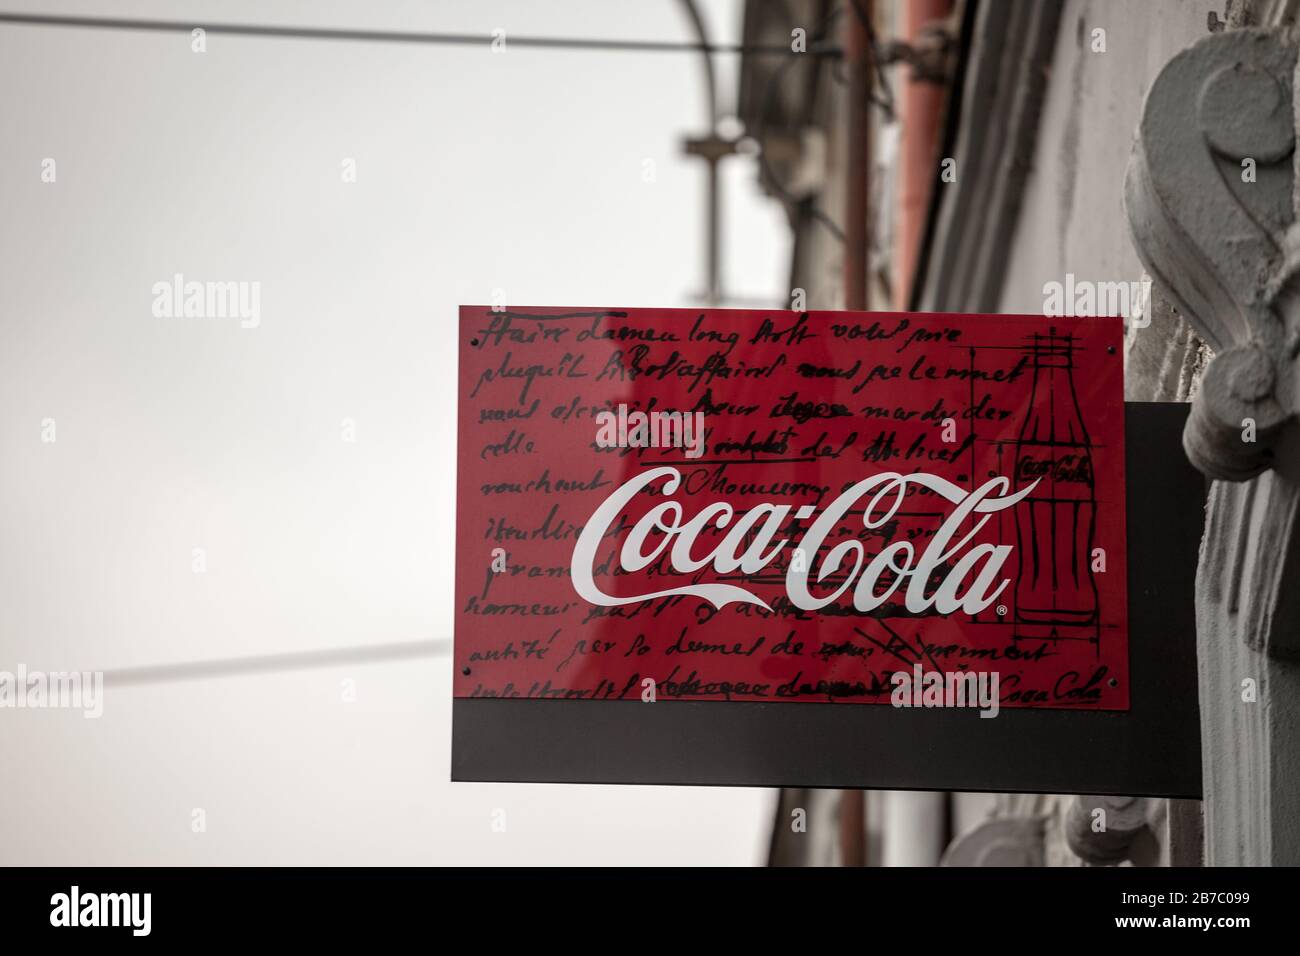 PRAGA, CZECHIA - 3 NOVEMBRE 2019: Logo Coca Cola su un bar, un rivenditore. Coca Cola è una marca di bibite di cola, la più venduta al mondo, e un grande am Foto Stock